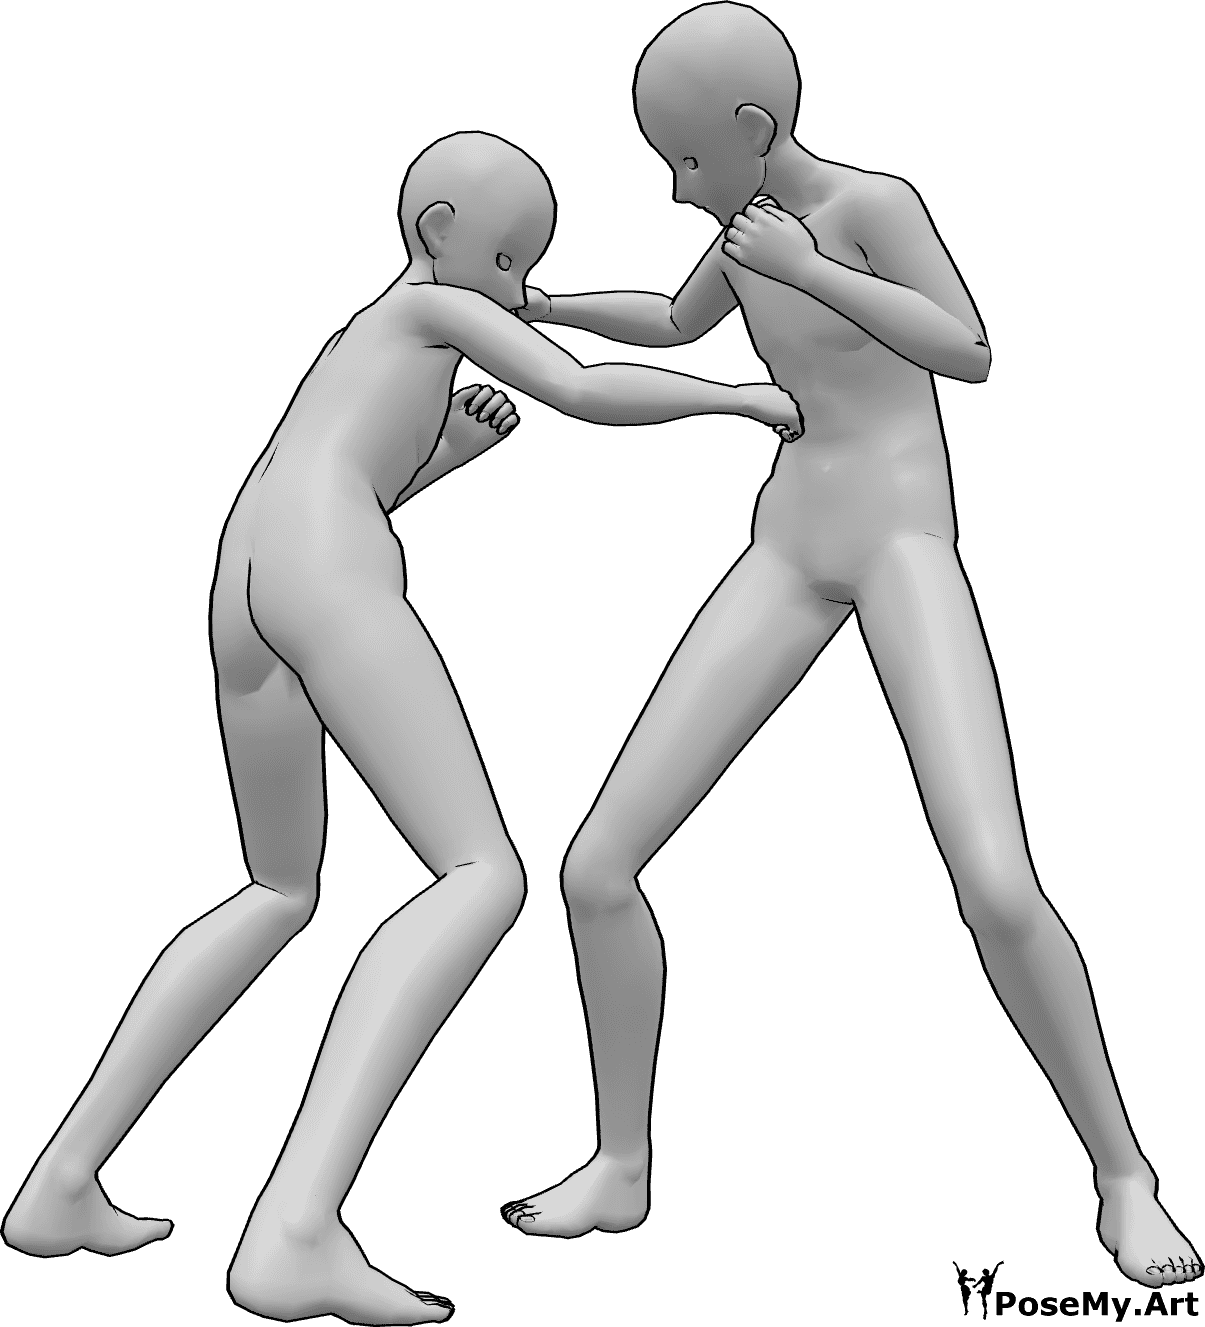 Referência de poses- Pose de luta de homens de anime - Dois homens de anime estão a lutar, dando murros na cabeça e no estômago um do outro